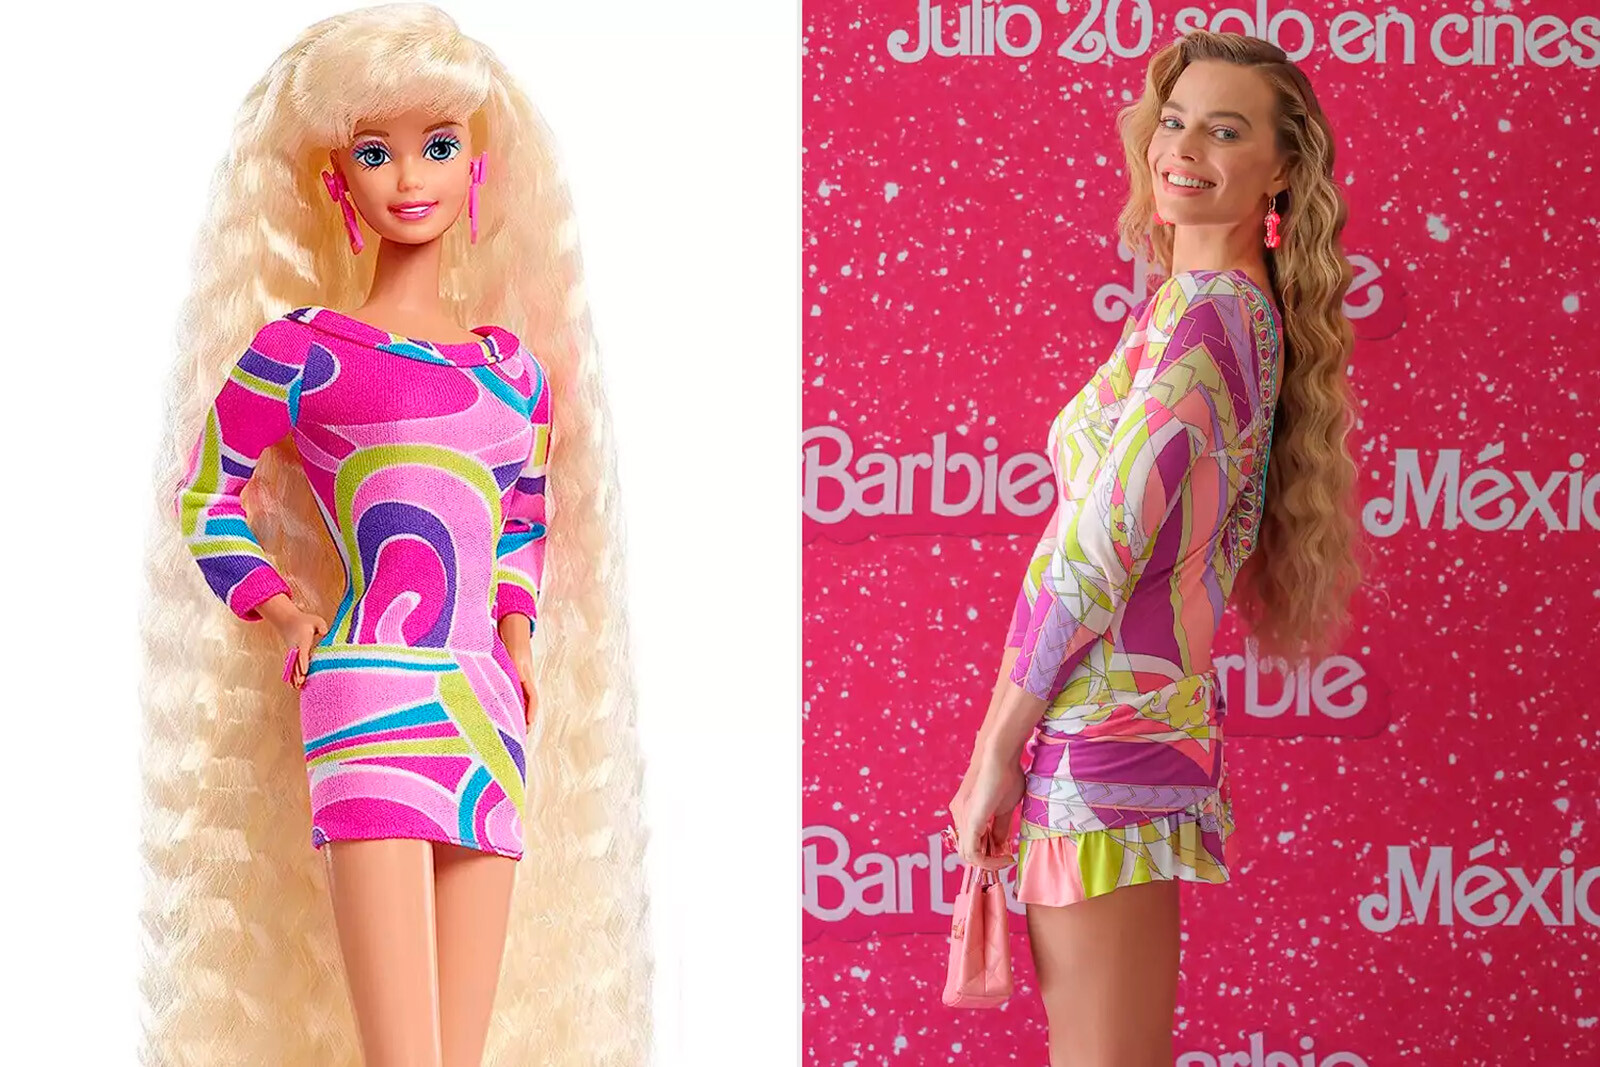 Марго Робби выбрала для дебюта в Мексике новую причёску Барби